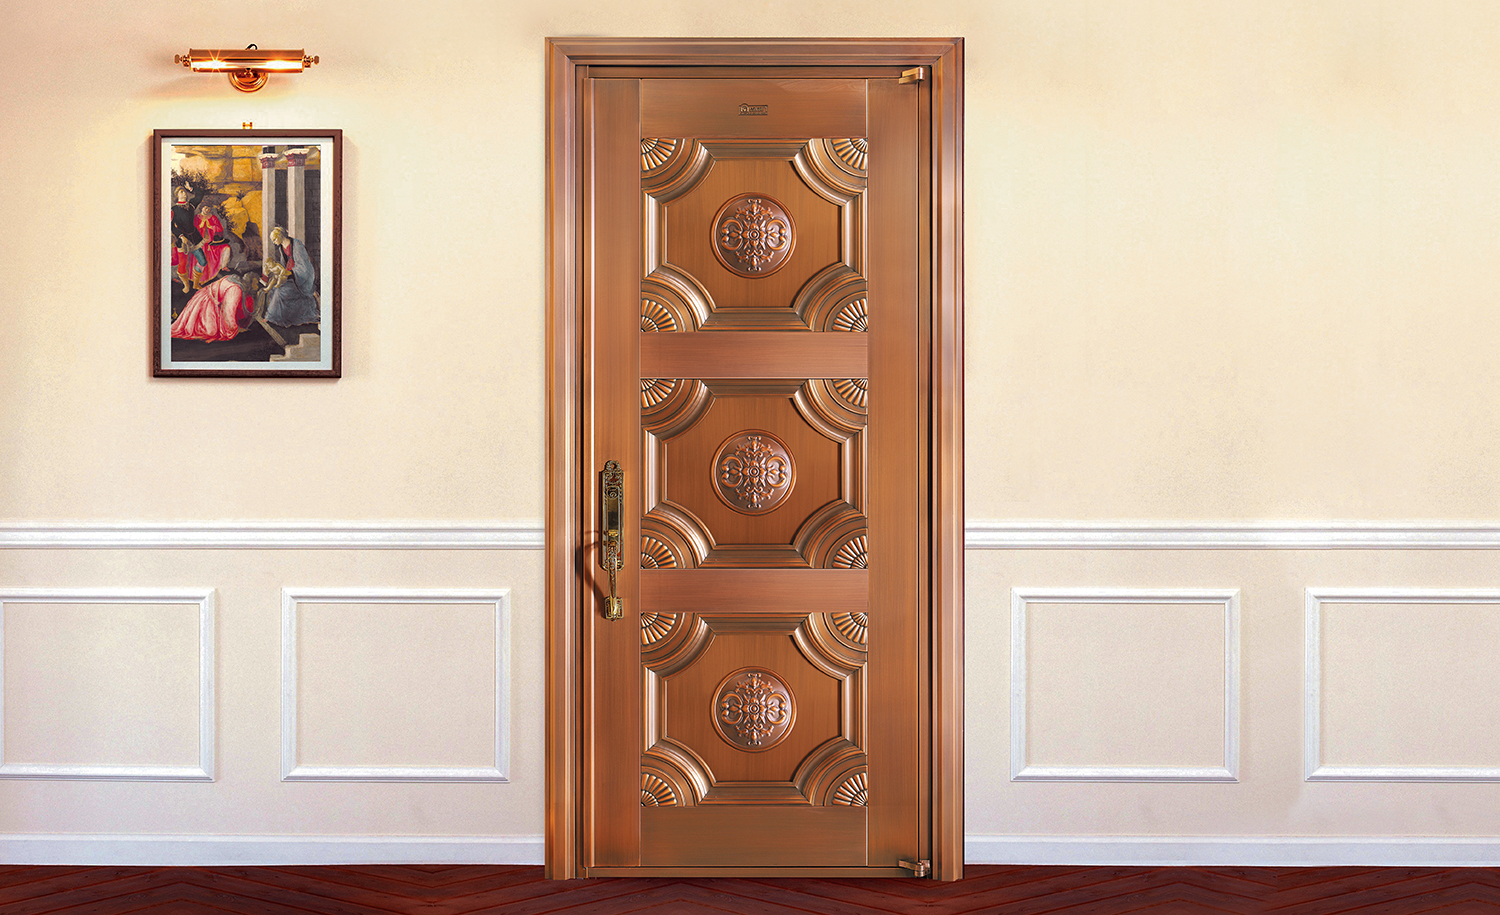 H004大展宏图,真铜门,单开铜门,单扇铜门